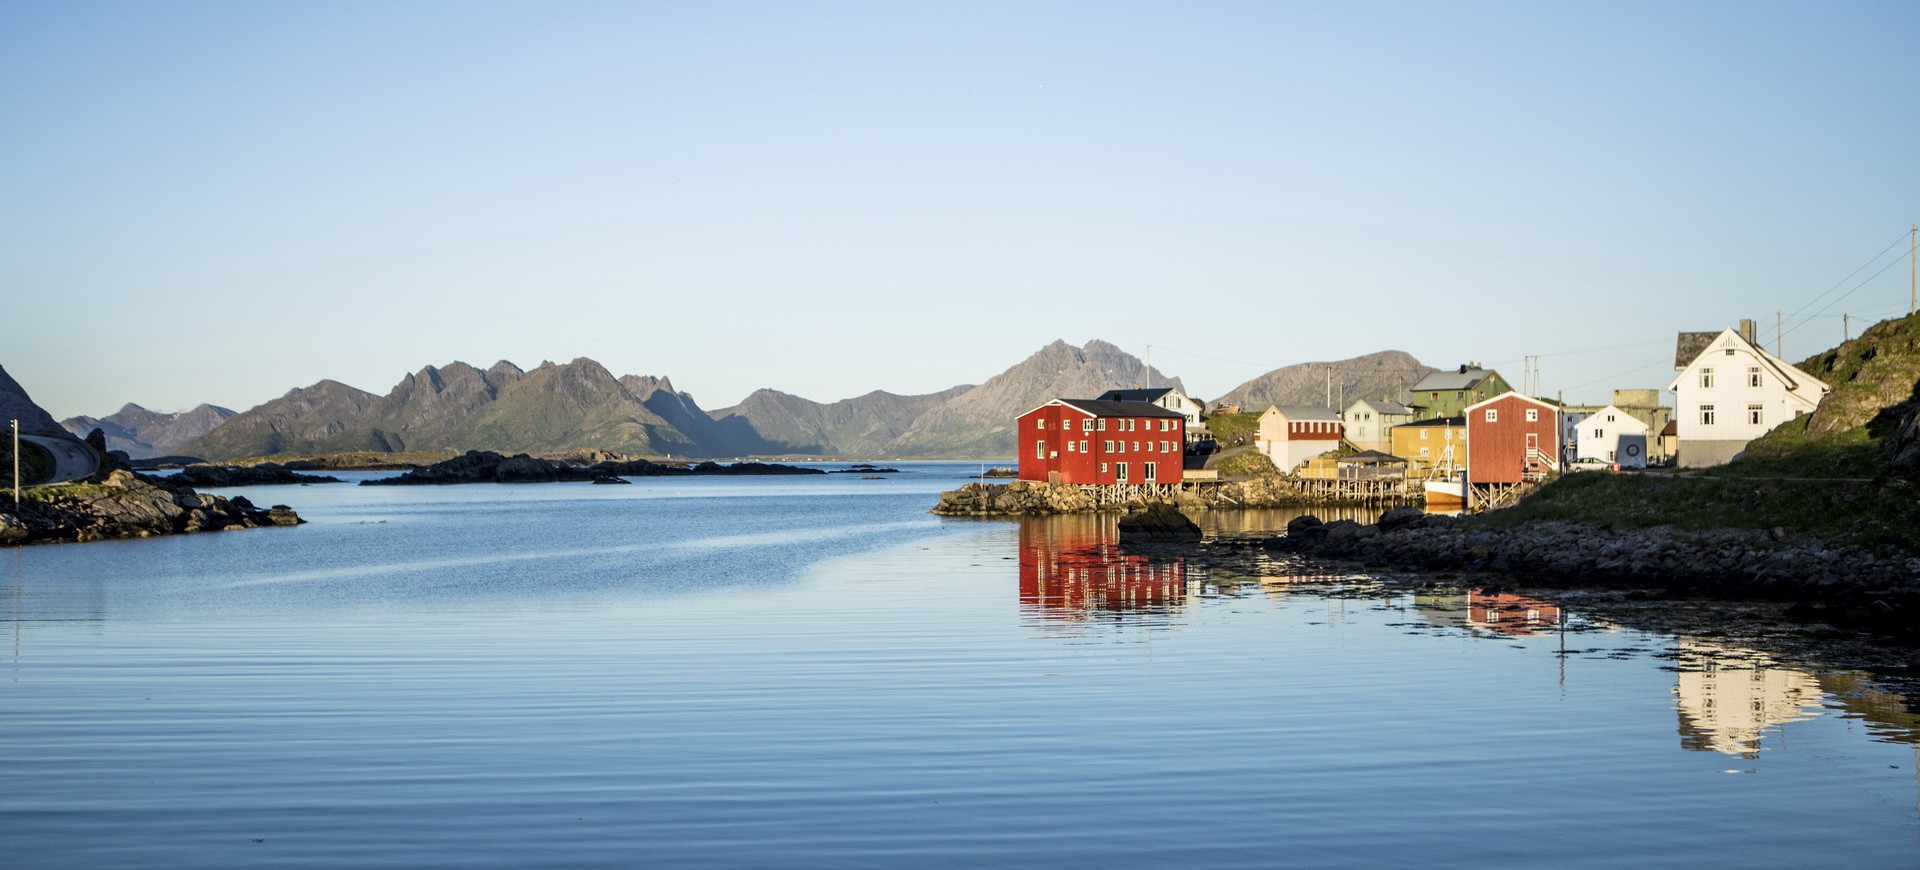 Norvège Bergen un village de Pêcheurs